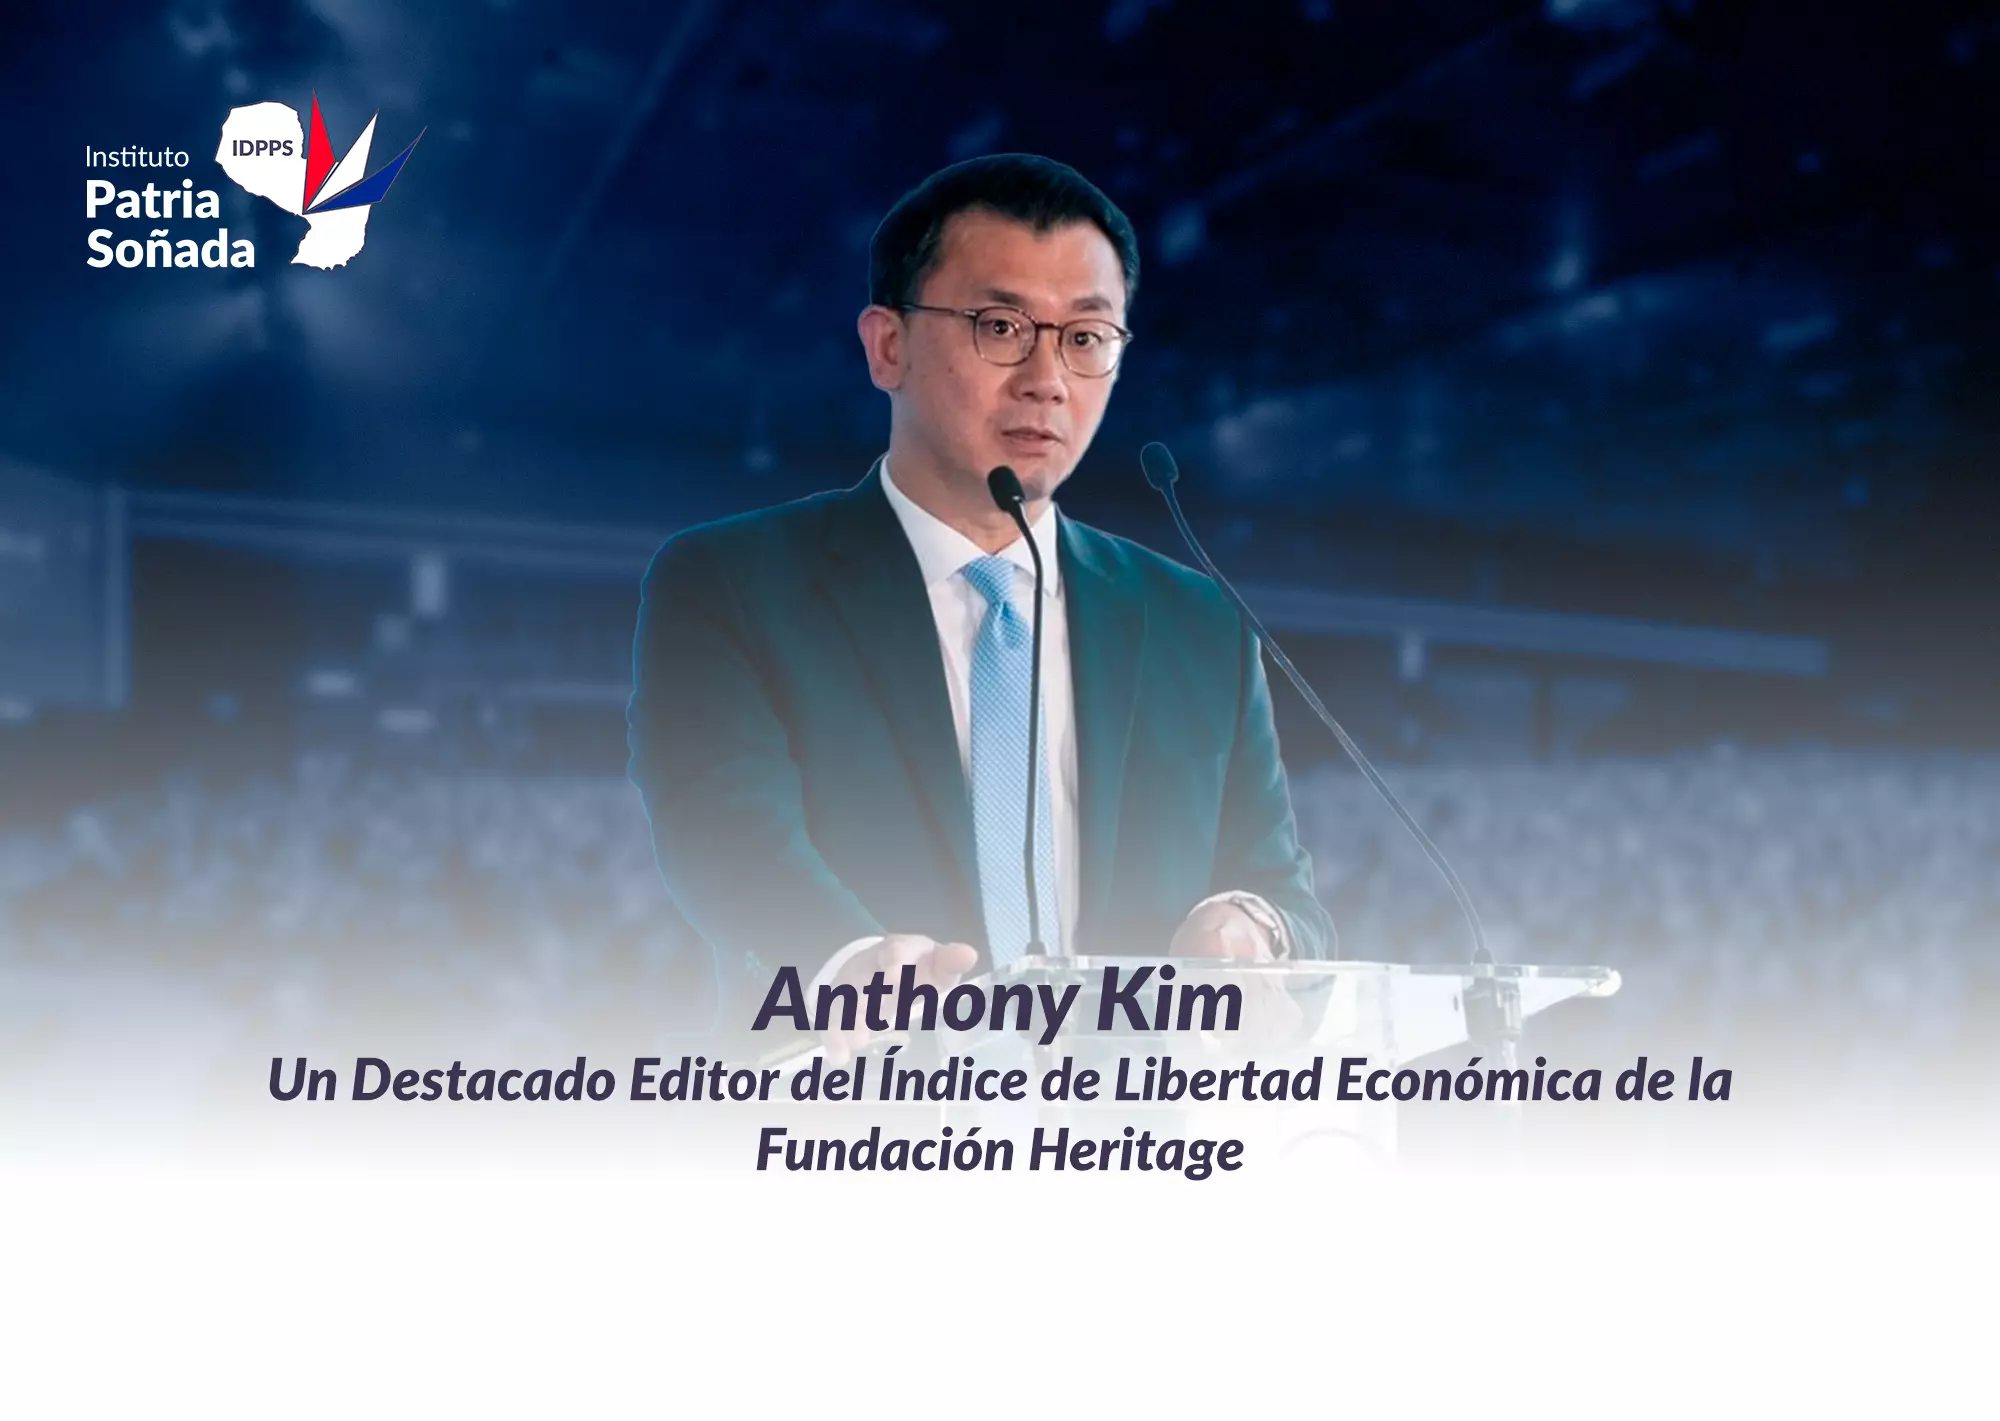 Anthony Kim Participará en el Lanzamiento de Indicadores de Libertad Económica en Paraguay